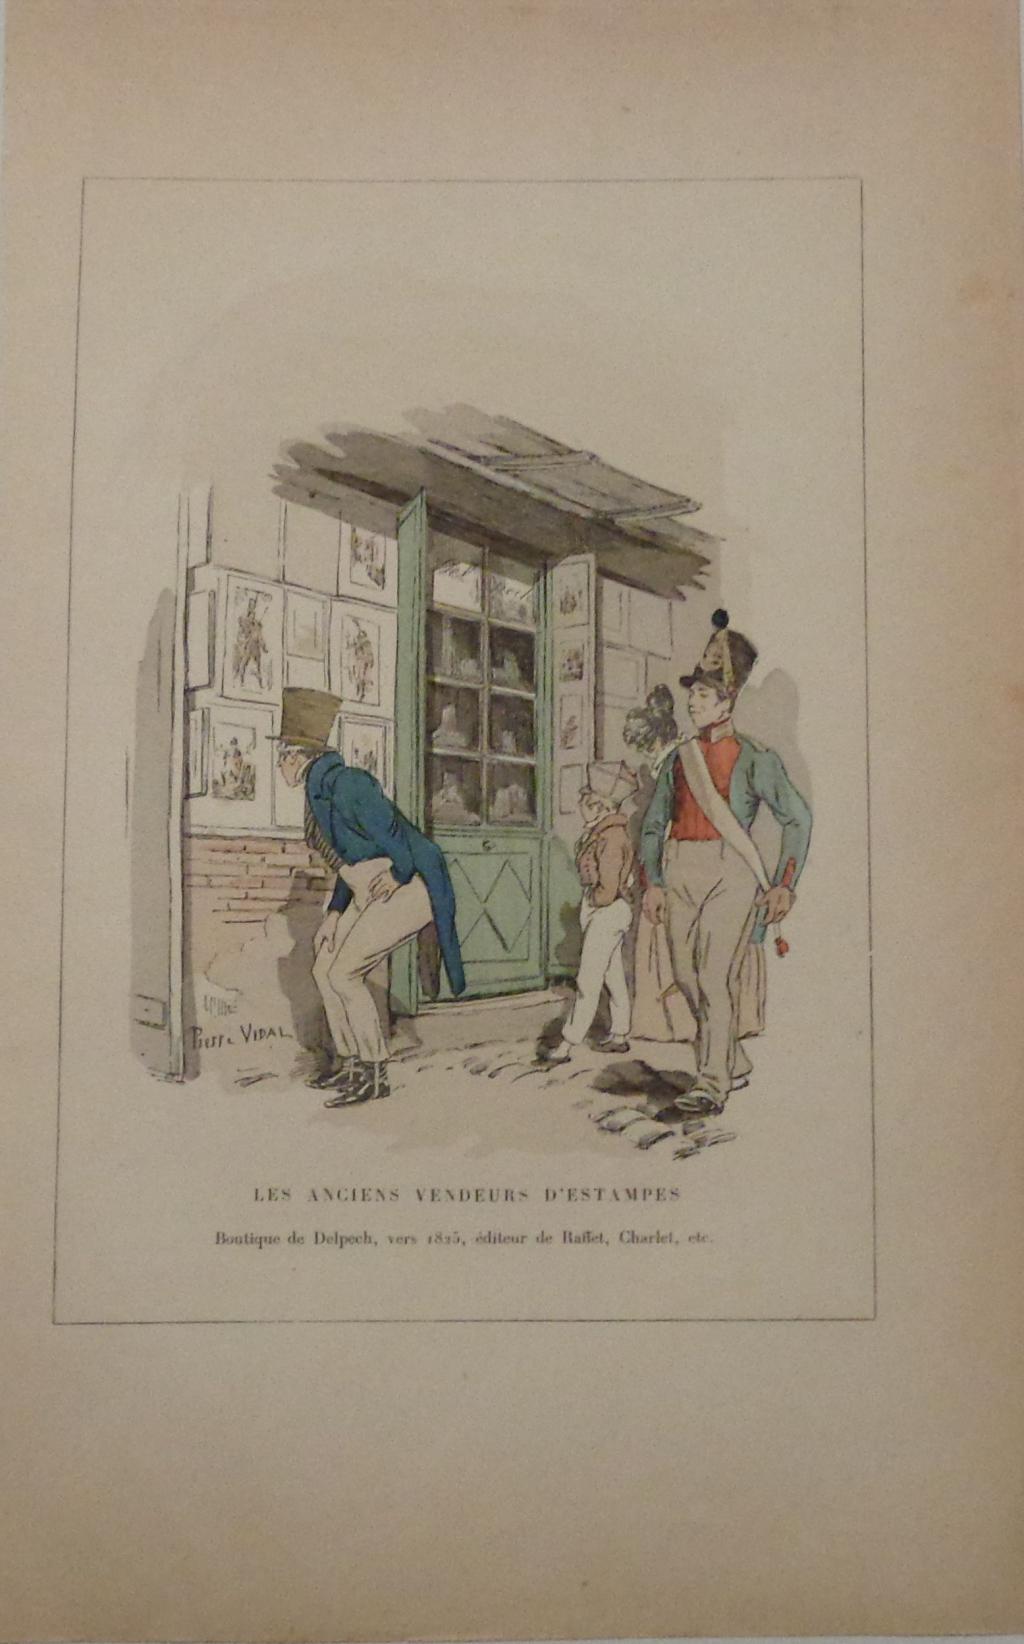 Vidal, Pierre: Boutique de Delpech, éditeur de Raffet, de Charlet, etc., vers 1815.